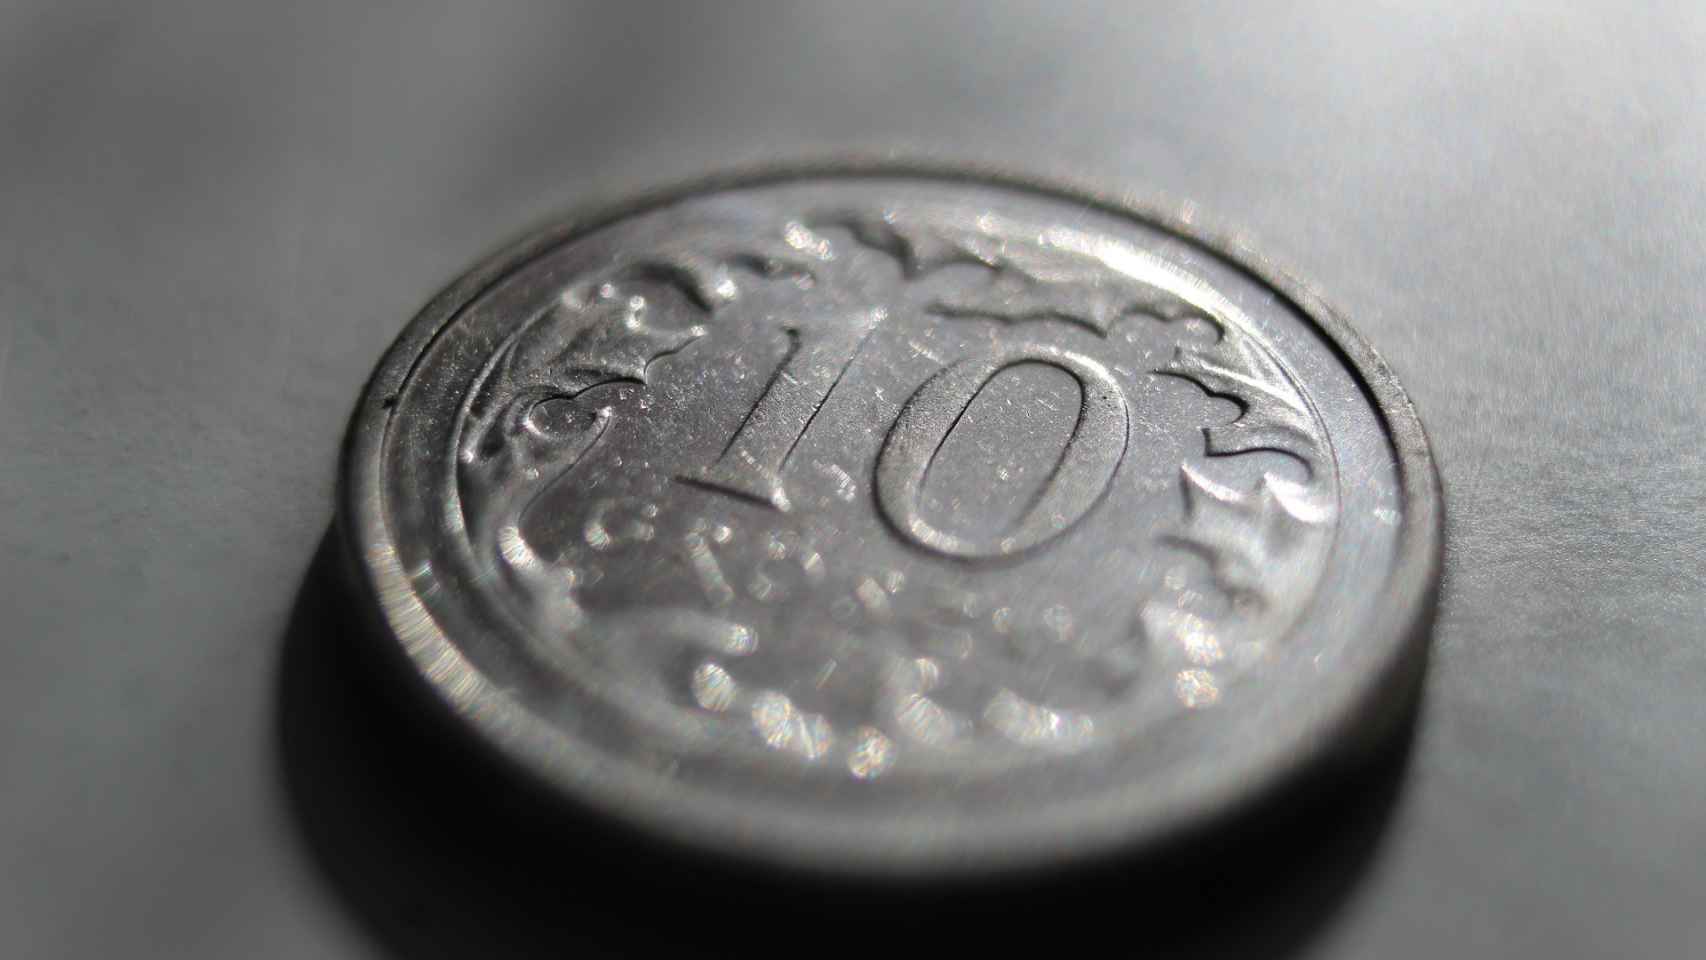 Una moneda de 10 groszy polacos.